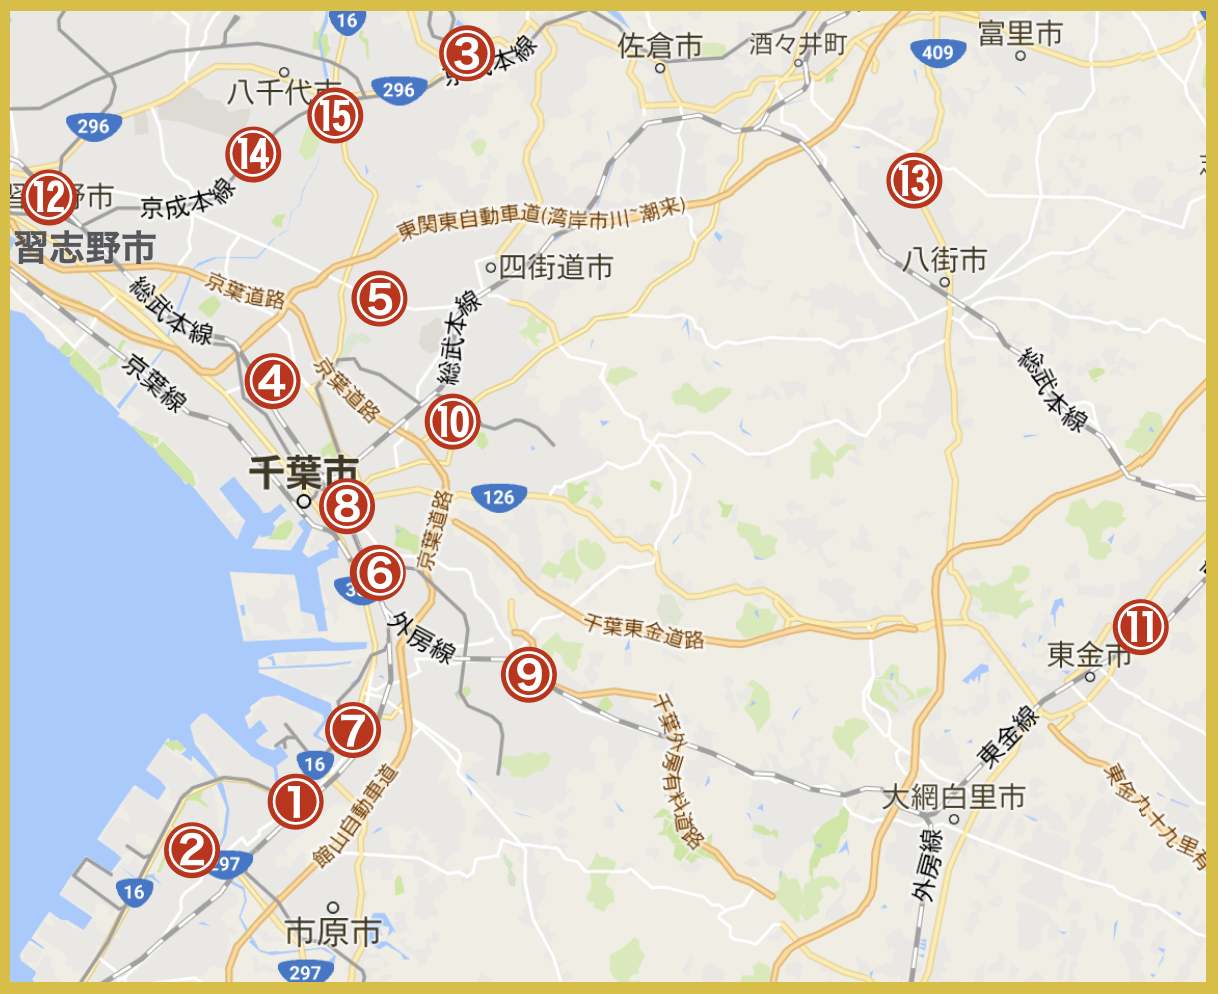 千葉県中央地域にあるプロミス店舗・ATMの位置（2020年版）